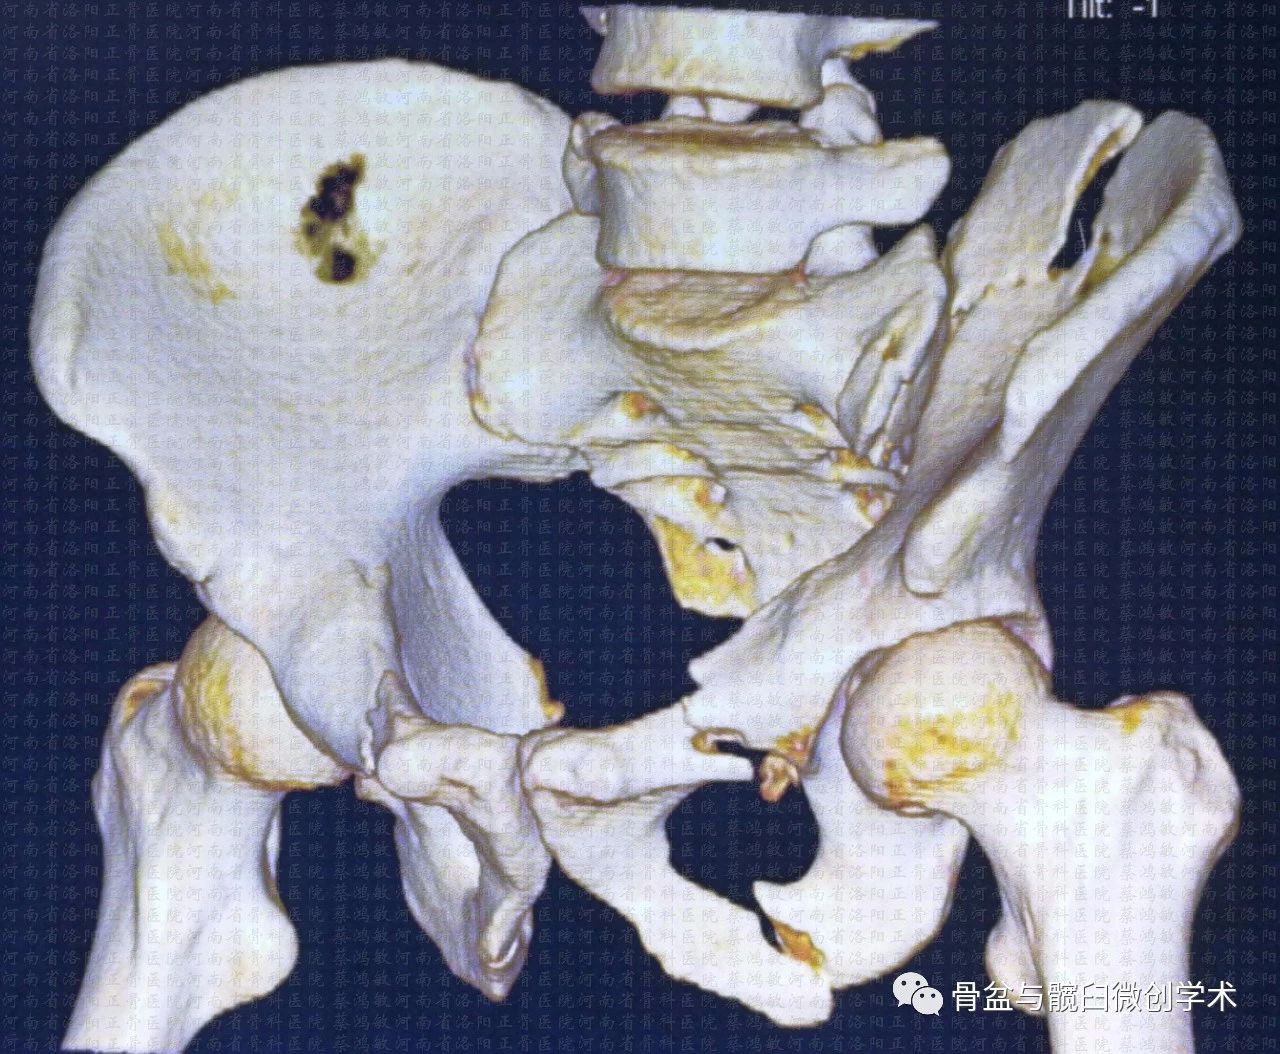 经髂骨骶骨的骶髂关节骨折脱位的微创治疗骶髂螺钉lcii螺钉耻骨上支